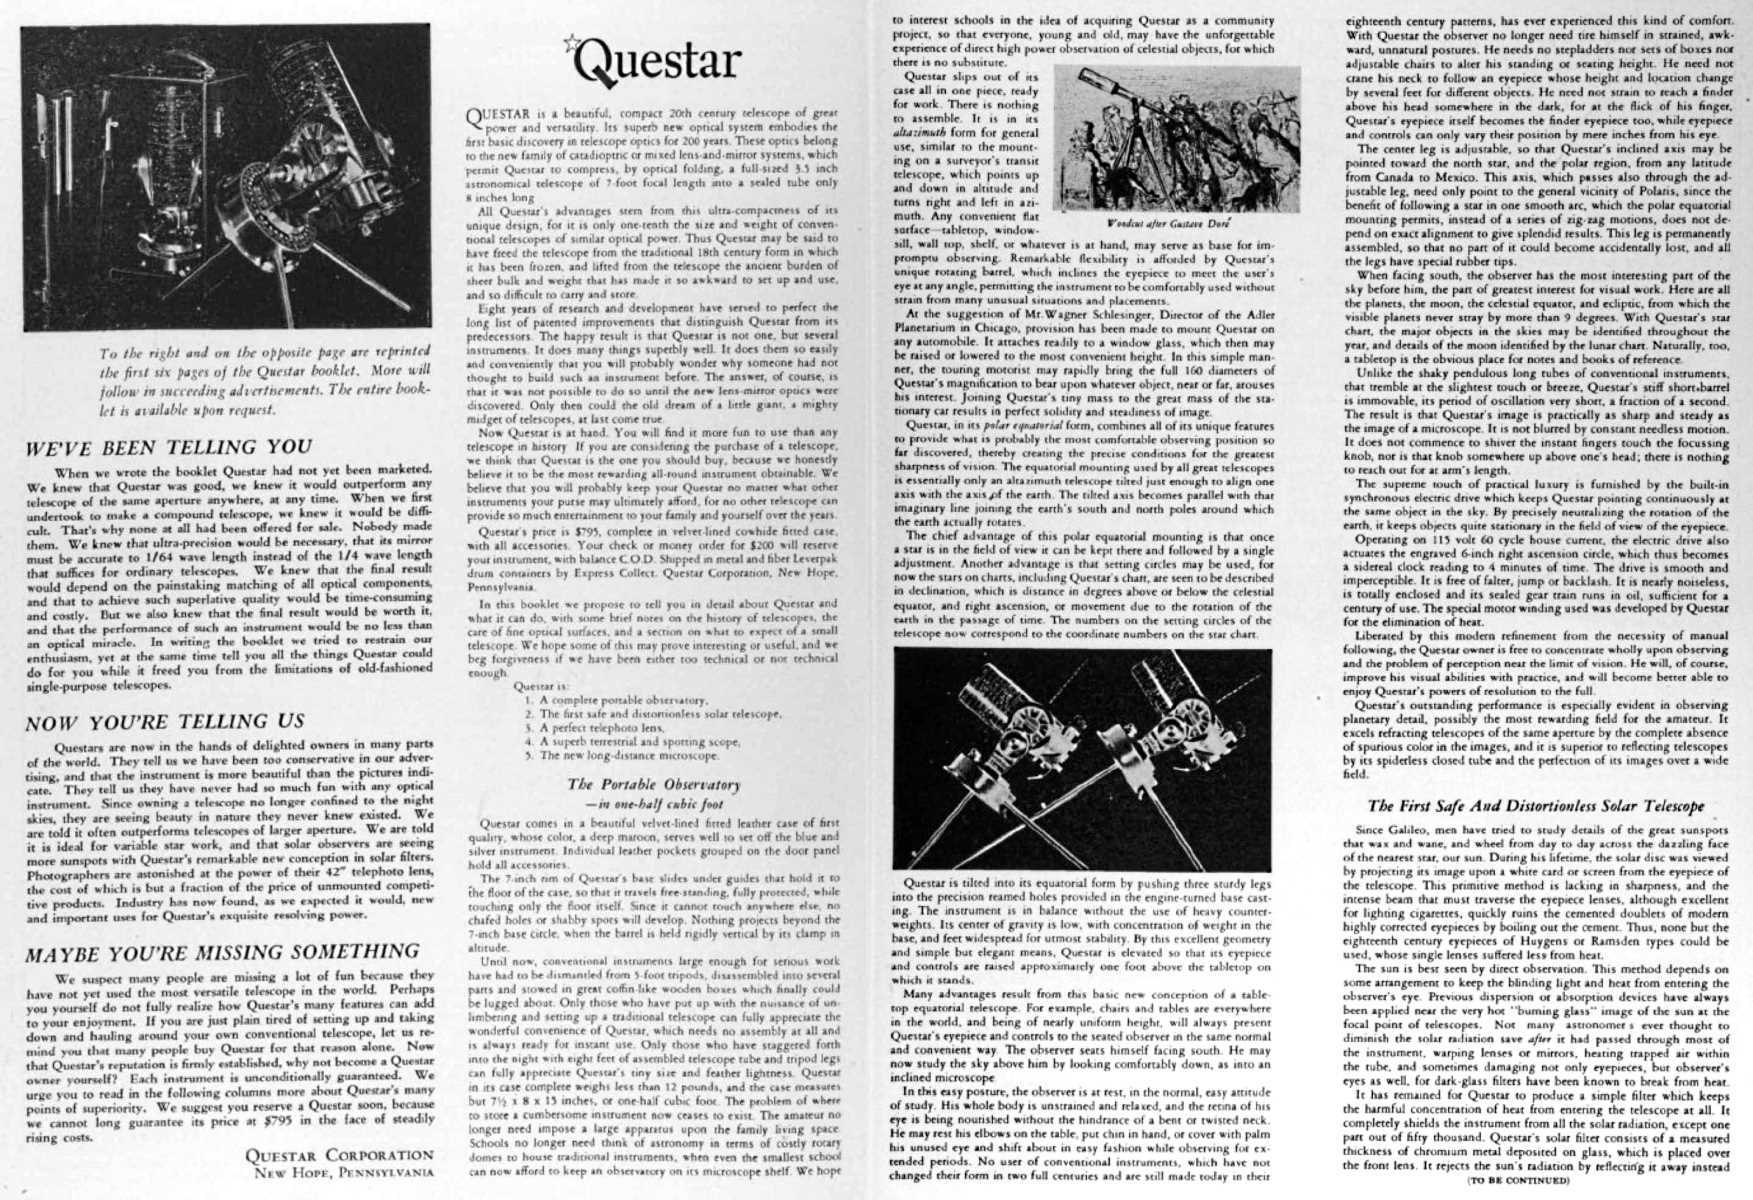 Questar advertisement, <em>Sky and Telescope</em>, November 1955